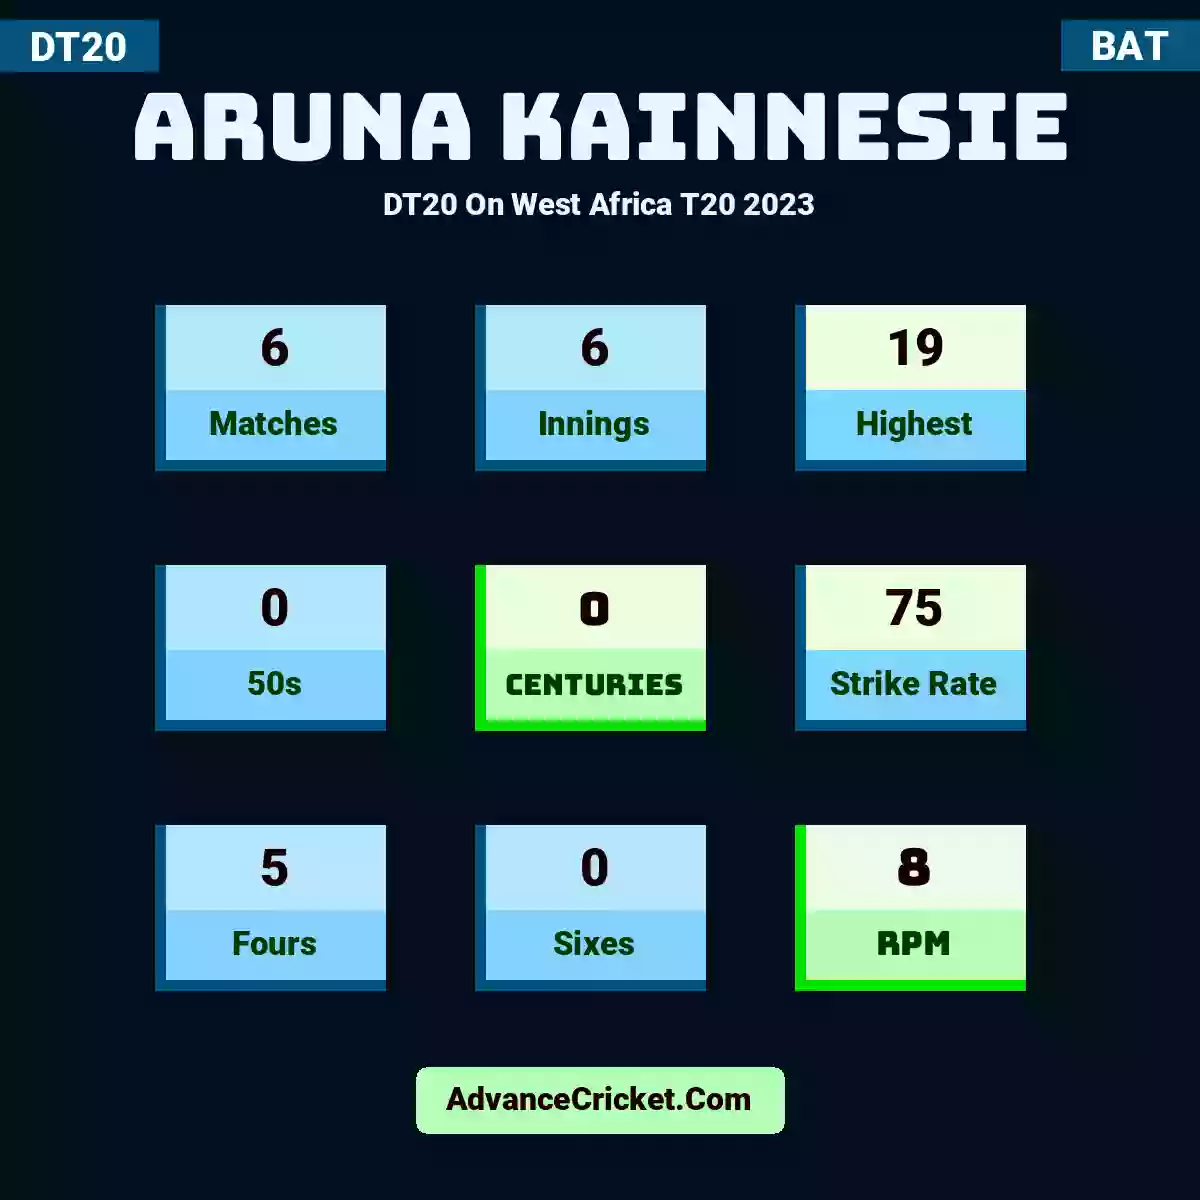 Aruna Kainnesie DT20  On West Africa T20 2023, Aruna Kainnesie played 6 matches, scored 19 runs as highest, 0 half-centuries, and 0 centuries, with a strike rate of 75. A.Kainnesie hit 5 fours and 0 sixes, with an RPM of 8.